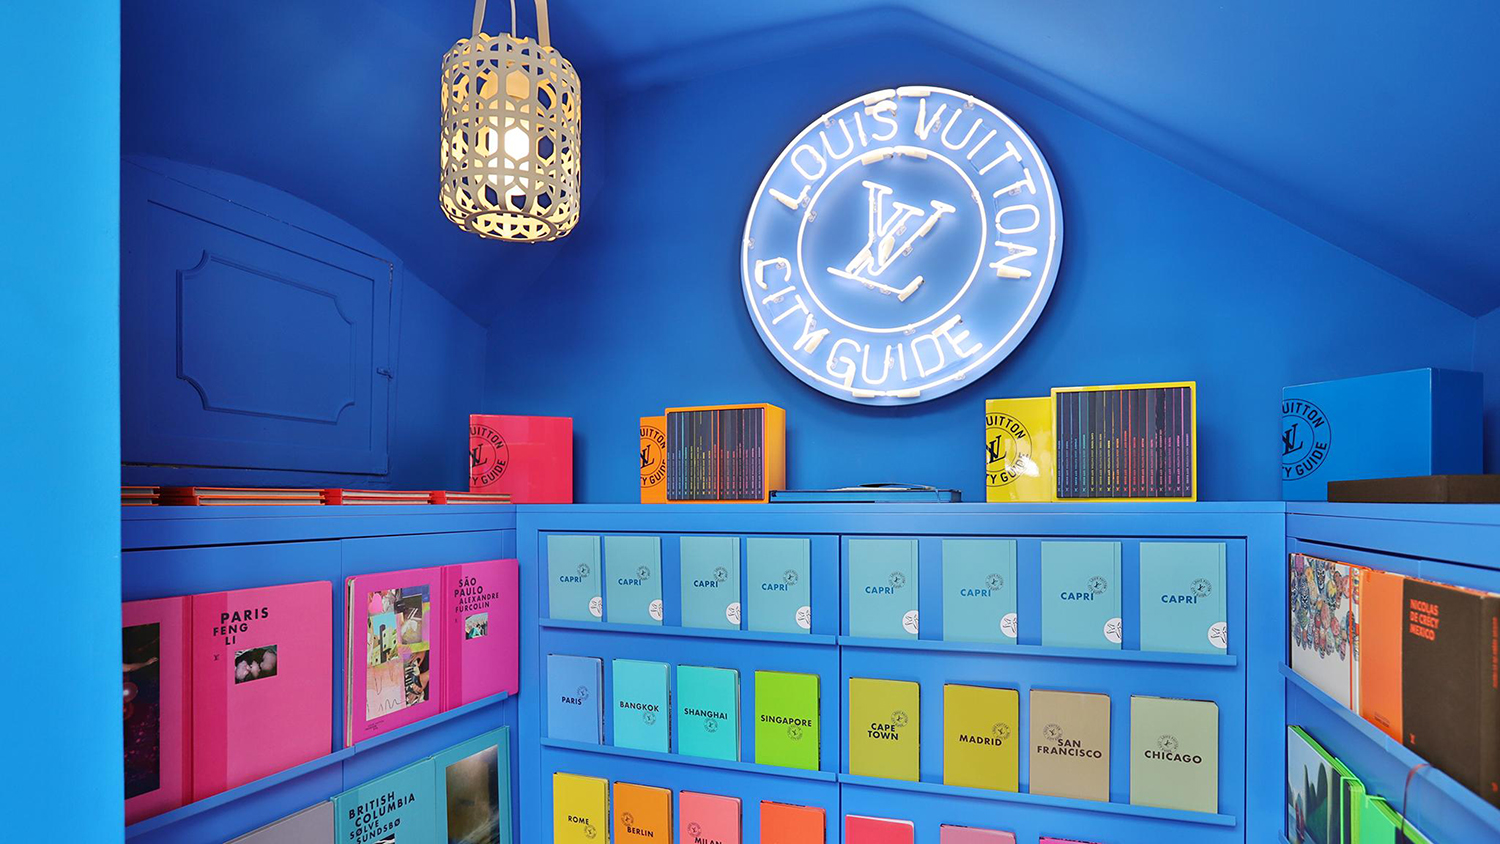 Louis Vuitton brings the librairie éphémère project in Capri - The